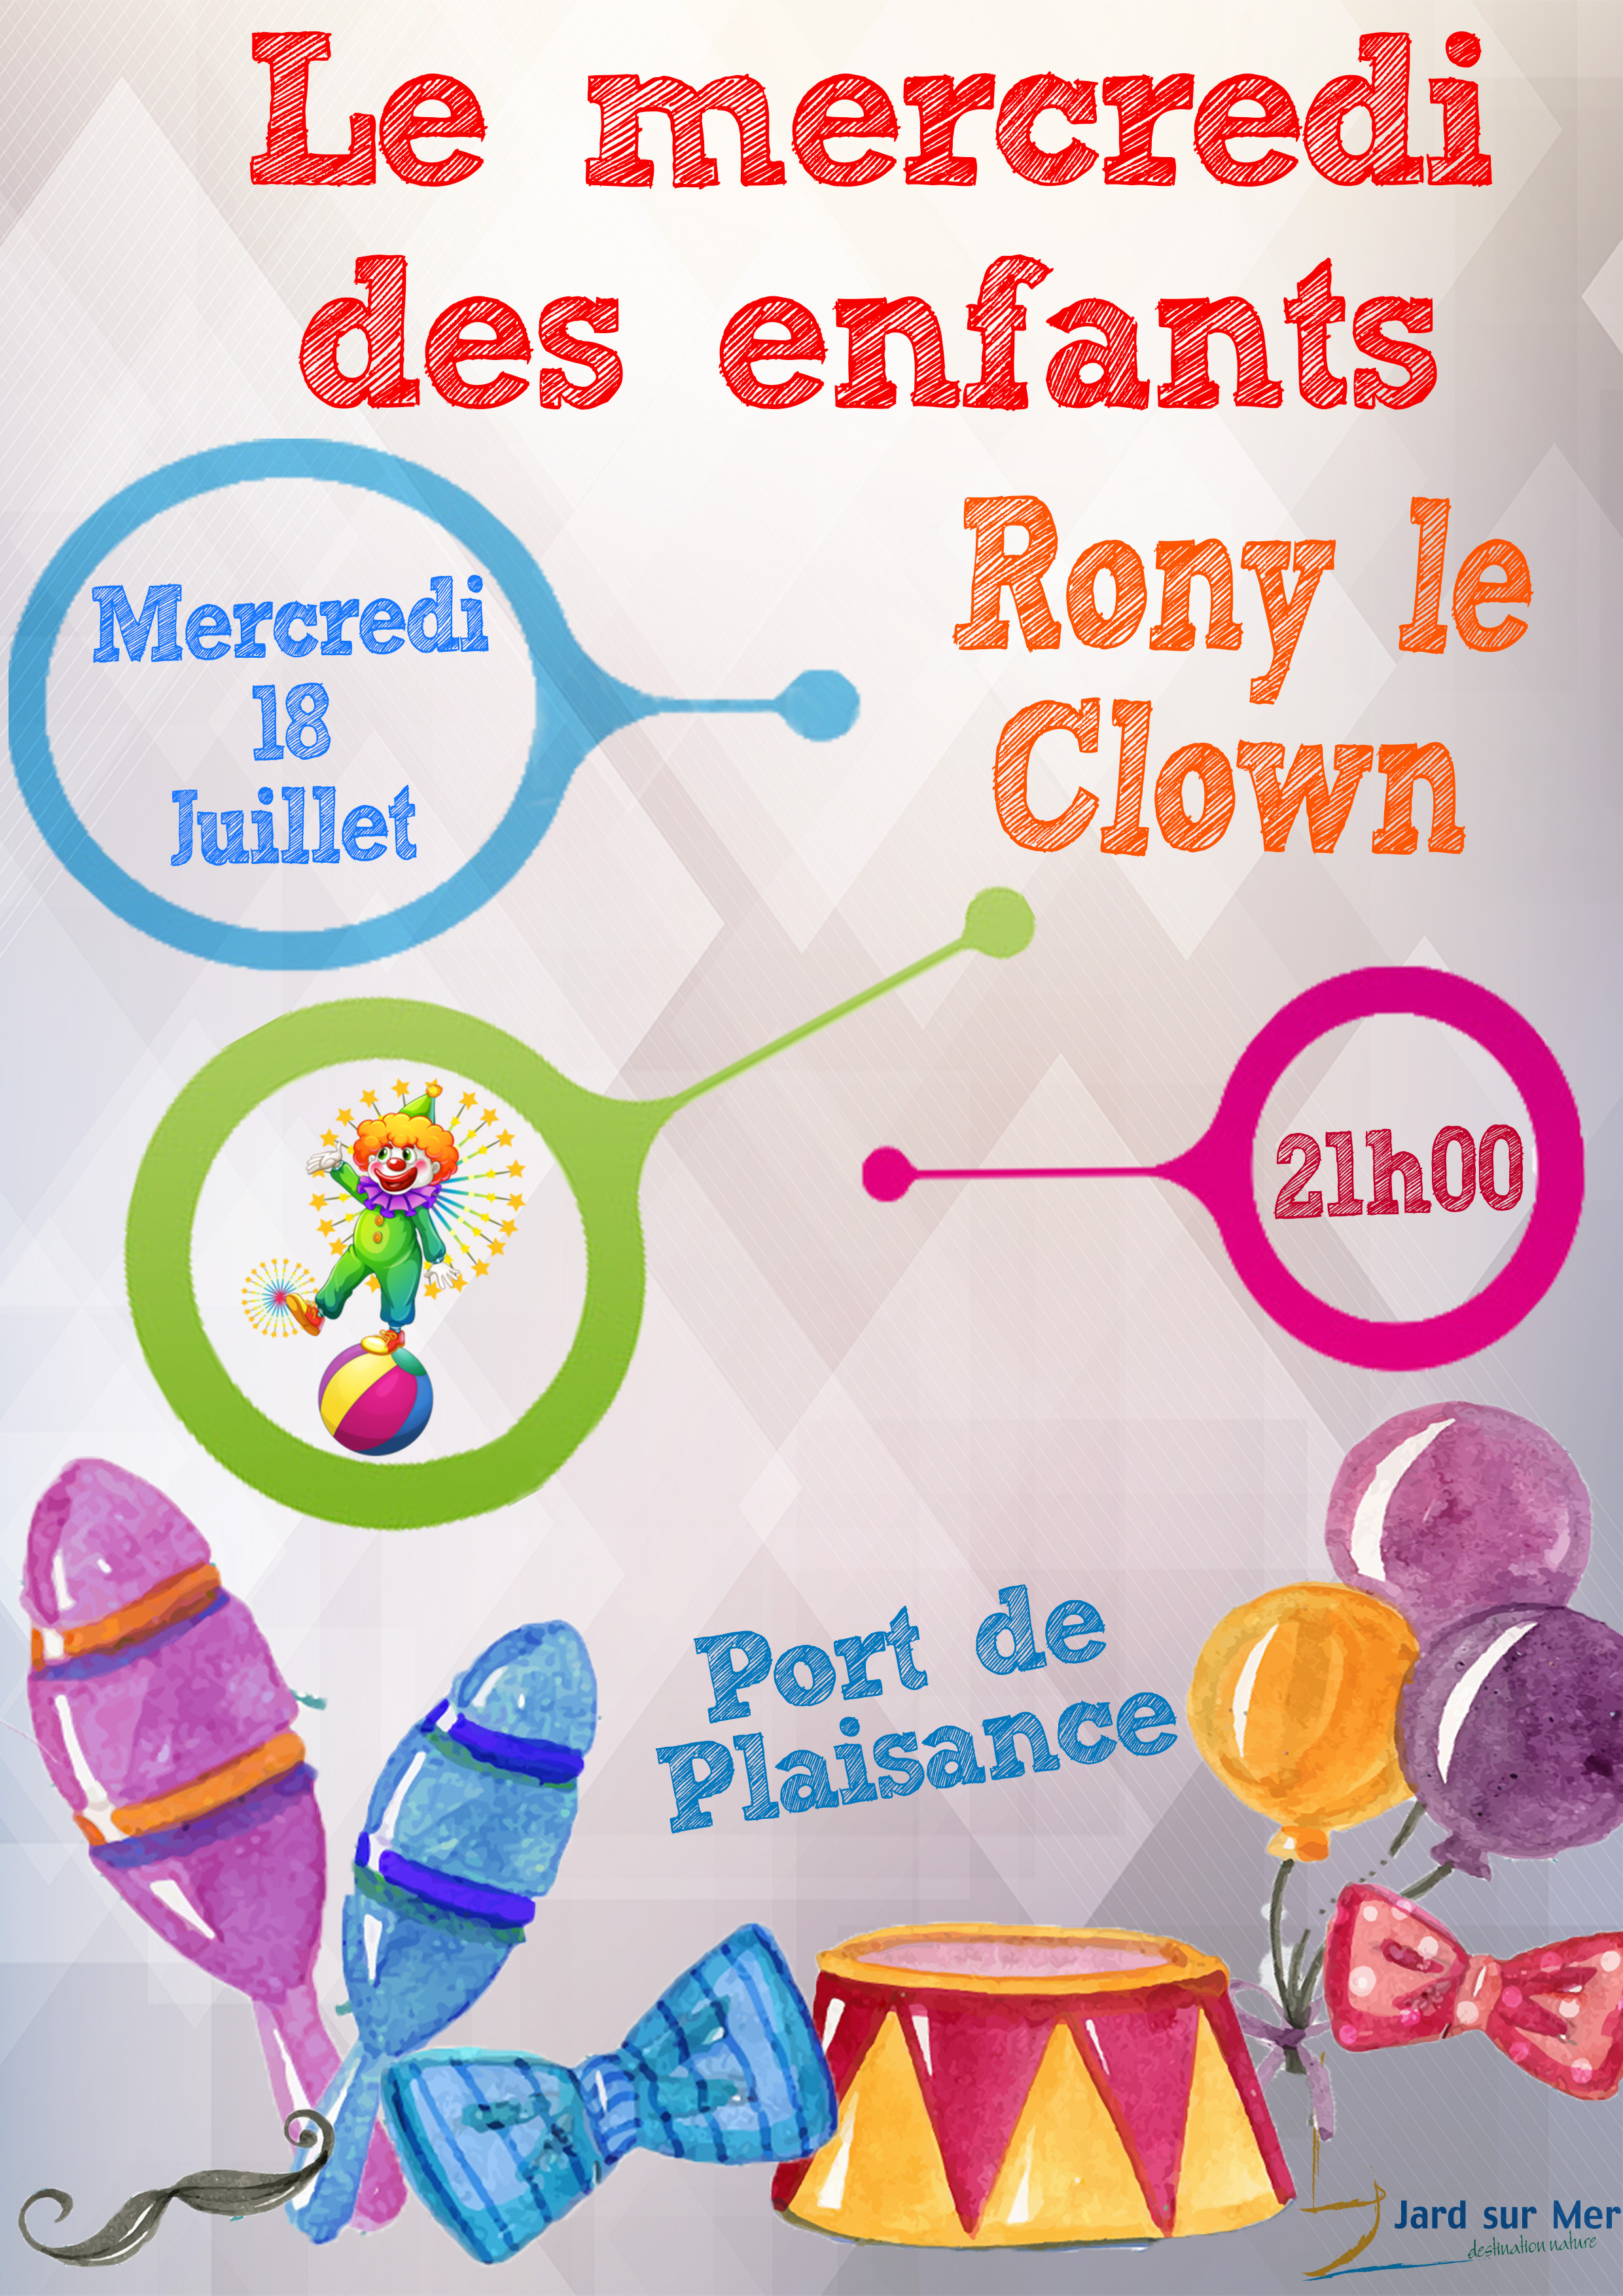 Rony le Clown | Site de la commune de Jard-sur-Mer